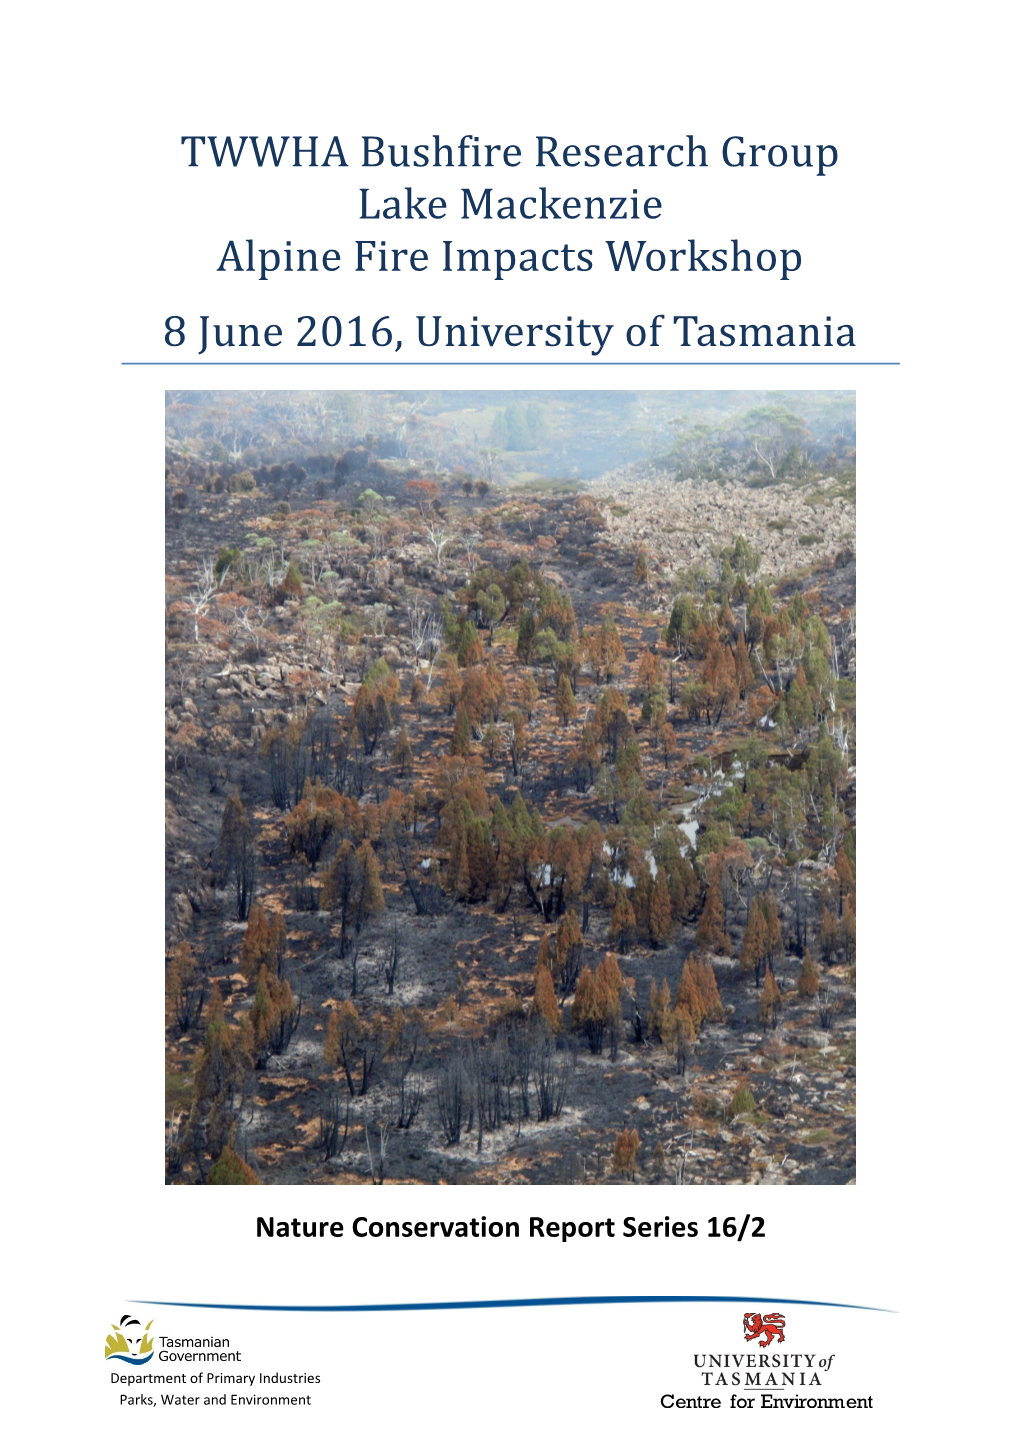 TWWHA Bushfire Research Group Lake Mackenzie Alpine Fire Impacts Workshop